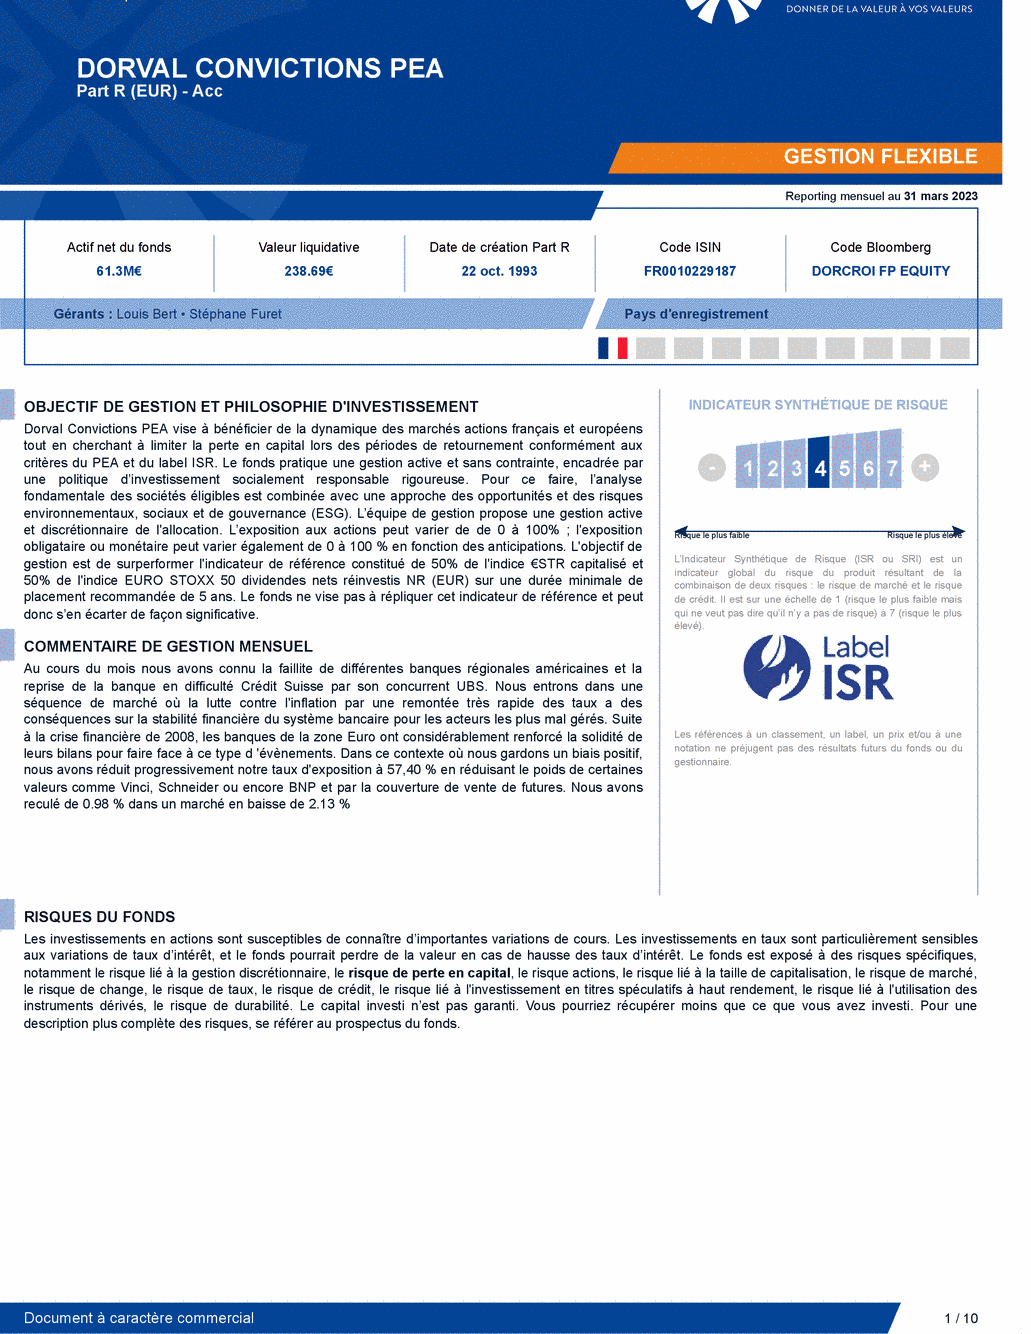 Reporting DORVAL CONVICTIONS PEA - 31/03/2023 - Français